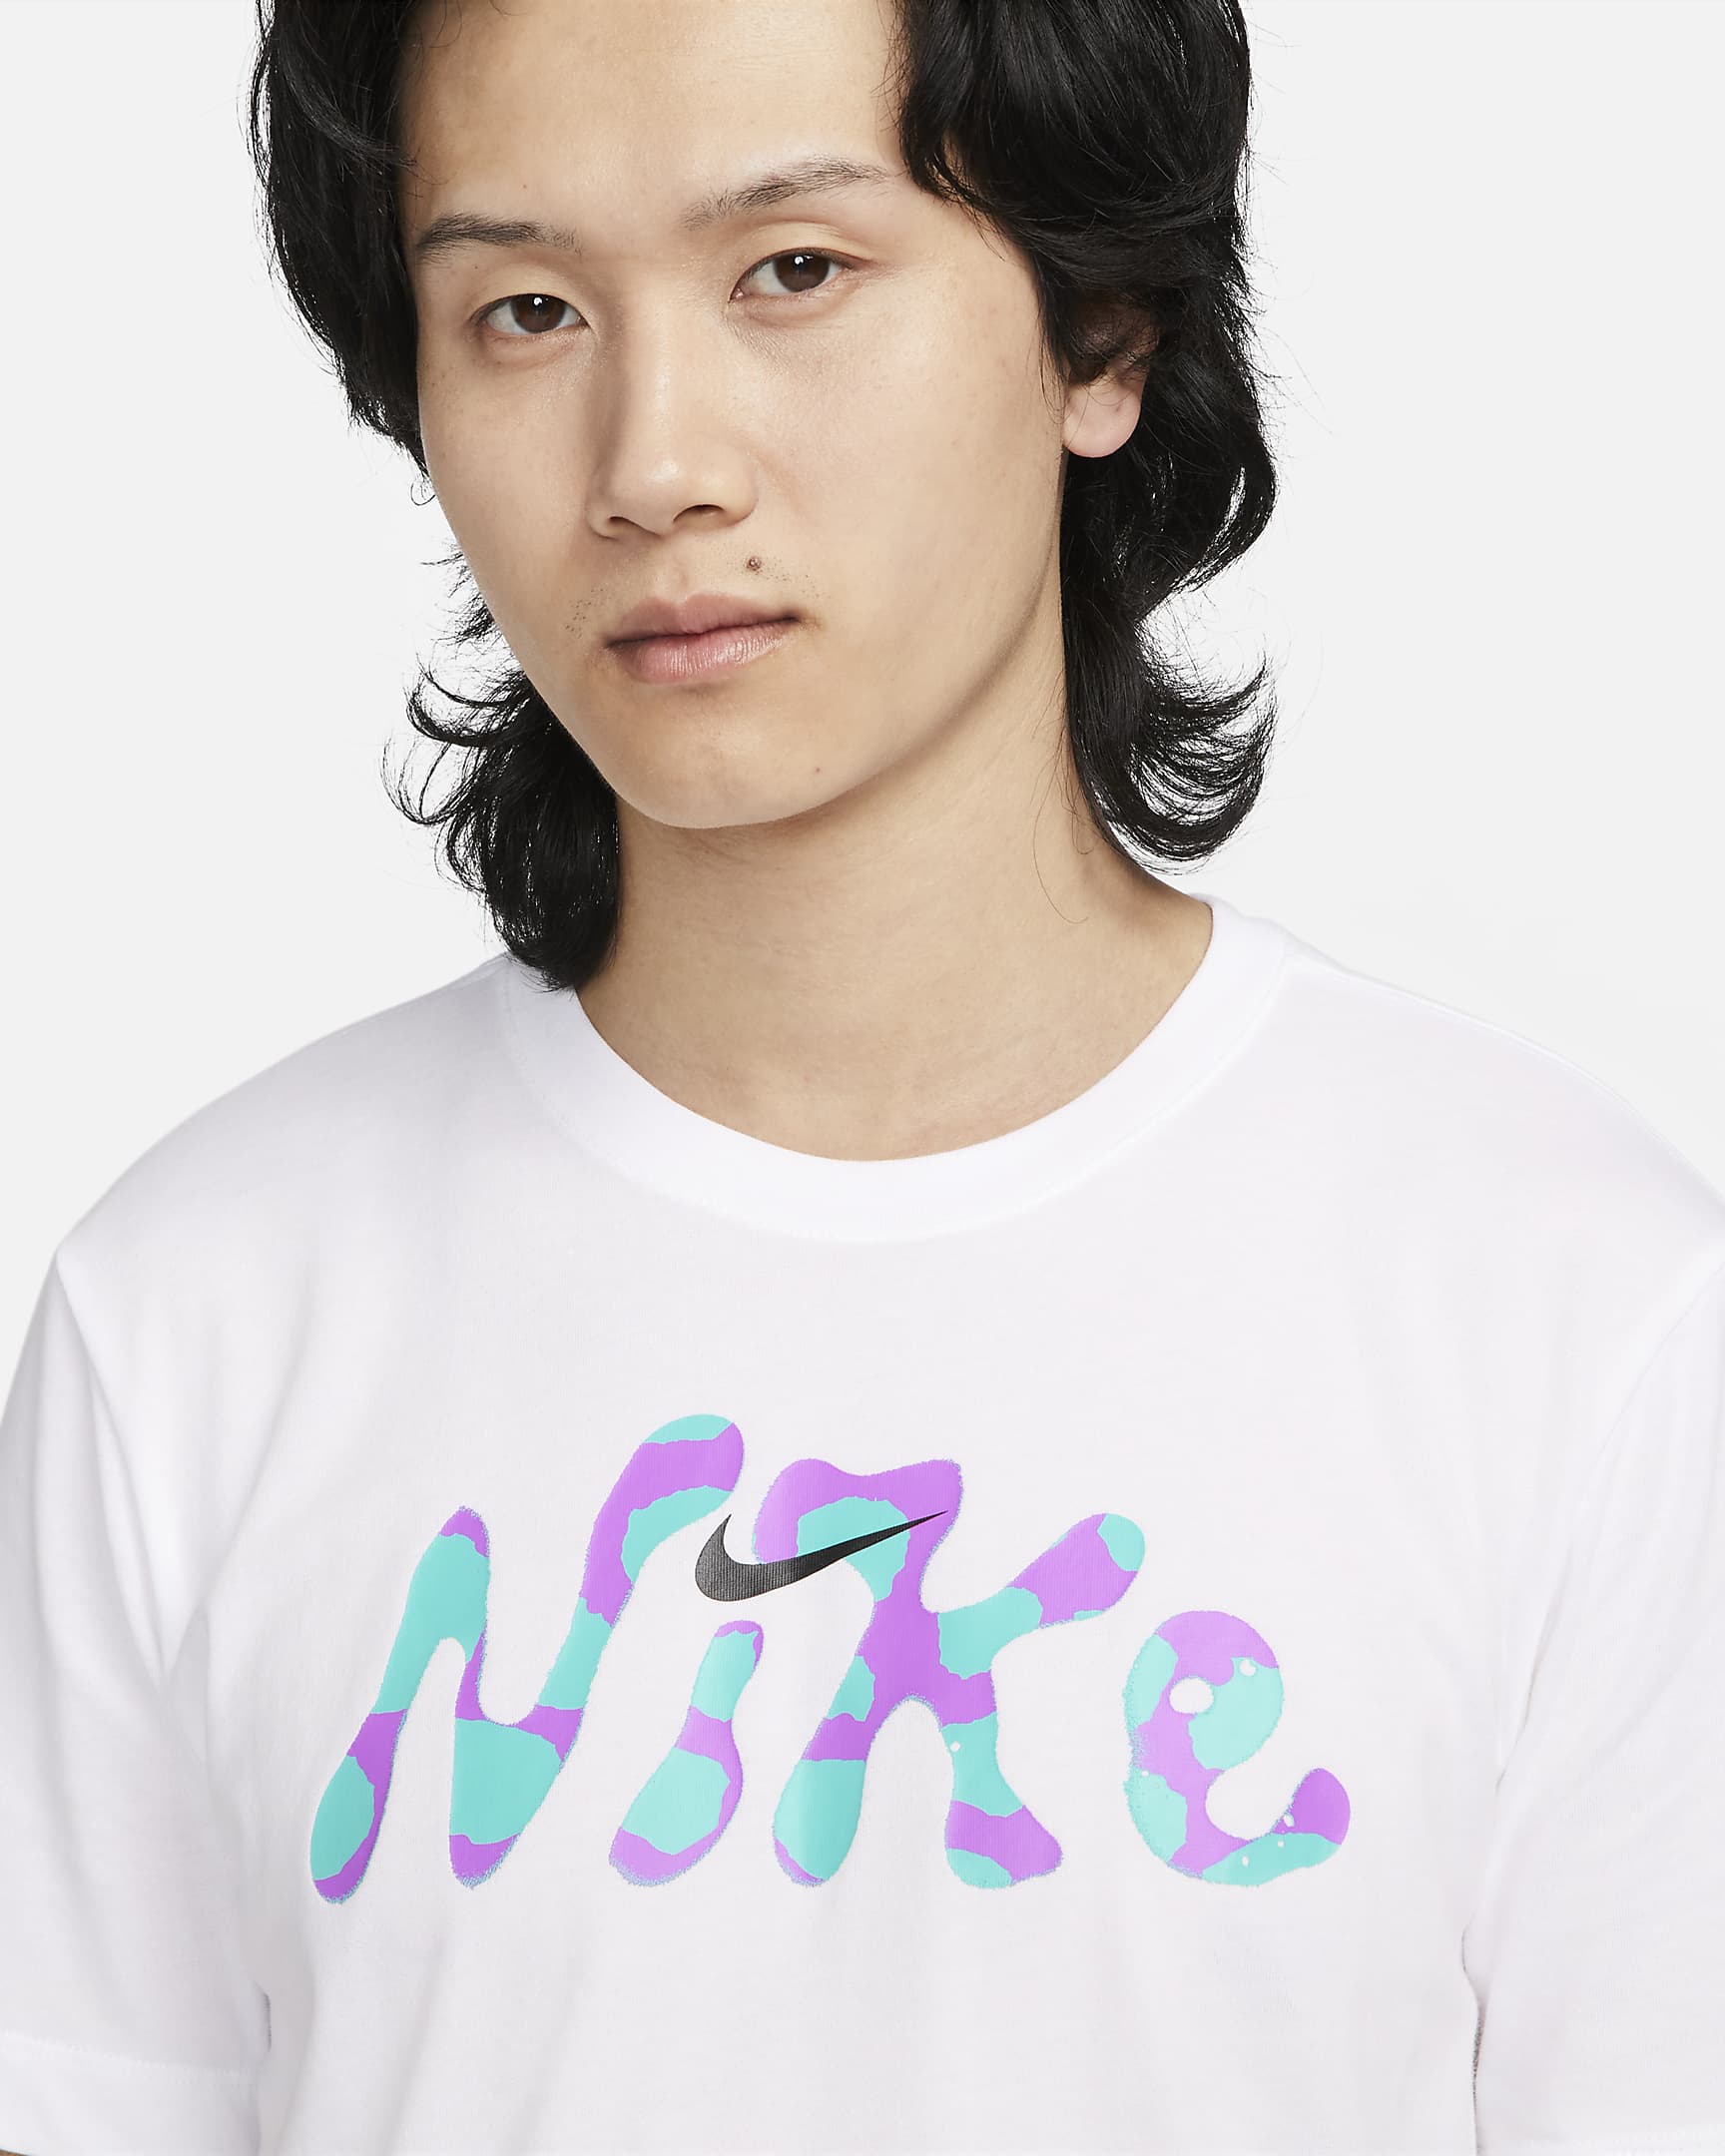 Nike Dri-FIT Men's Fitness T-Shirt. Nike JP